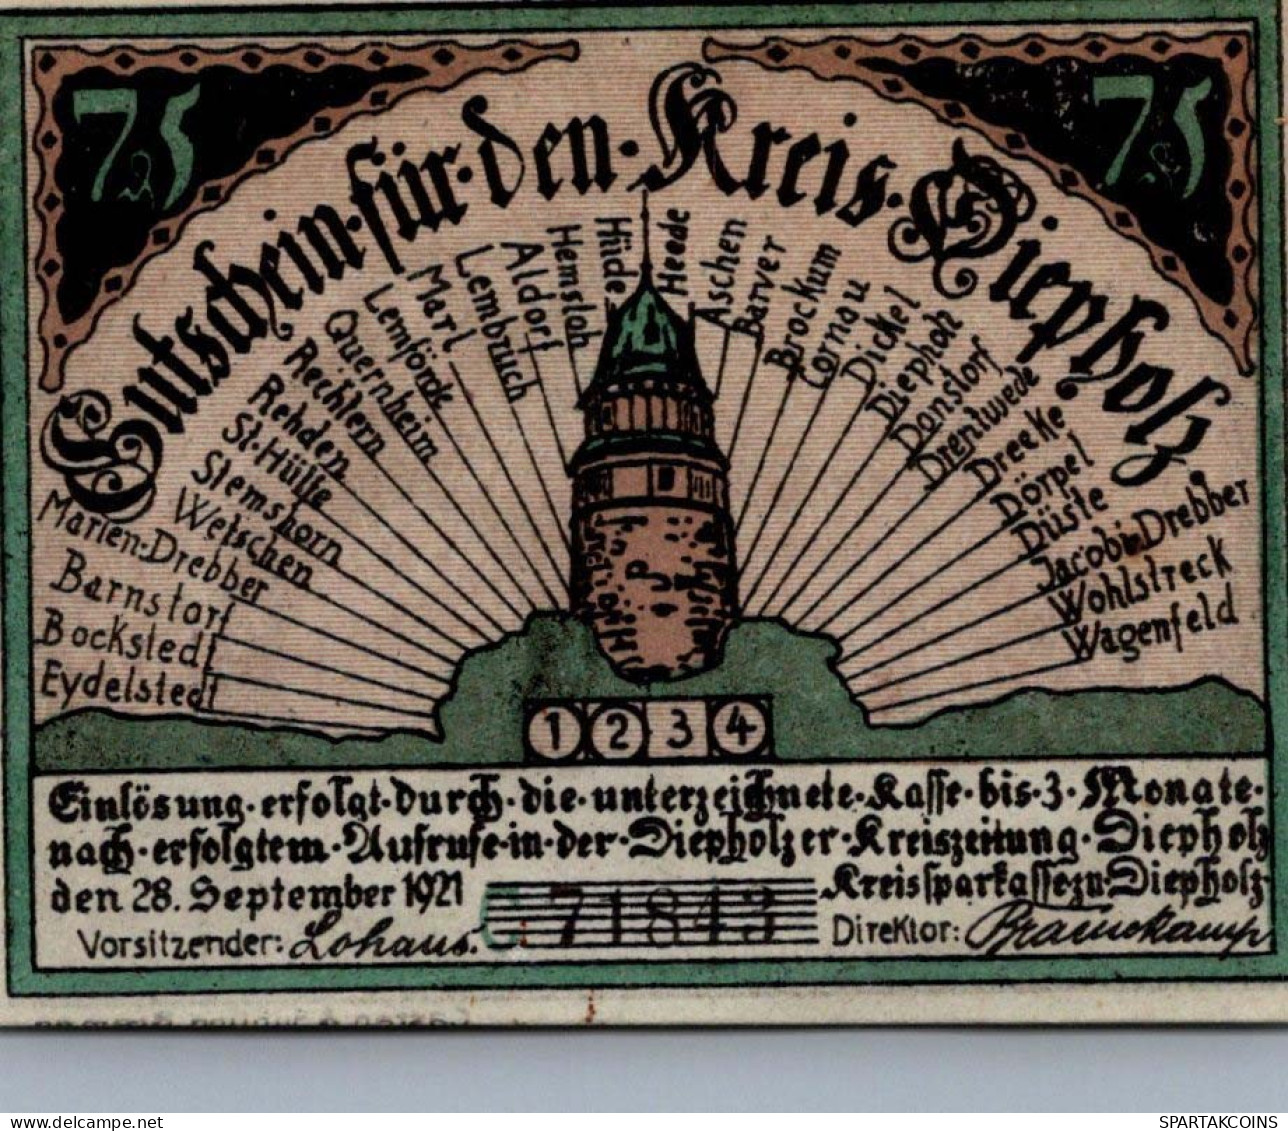 75 PFENNIG 1921 Stadt DIEPHOLZ Hanover UNC DEUTSCHLAND Notgeld Banknote #PA463 - [11] Local Banknote Issues